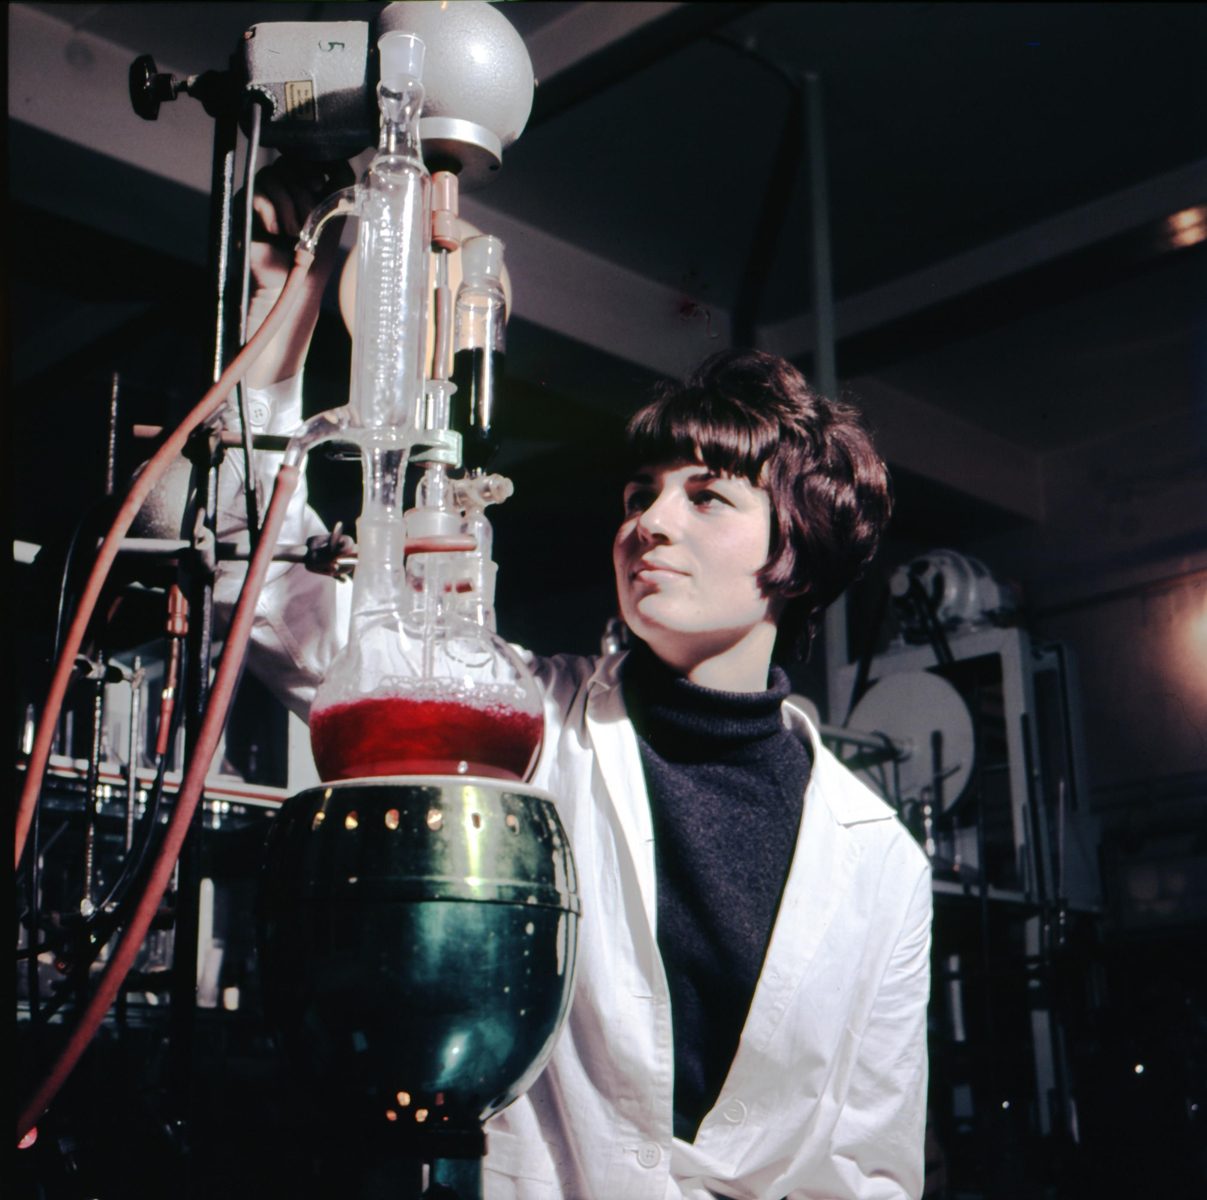 Eine Frau in einem weißen Kittel steht in einem Forschungslabor neben einem Glasgefäß, das mit roter Flüssigkeit gefüllt ist.